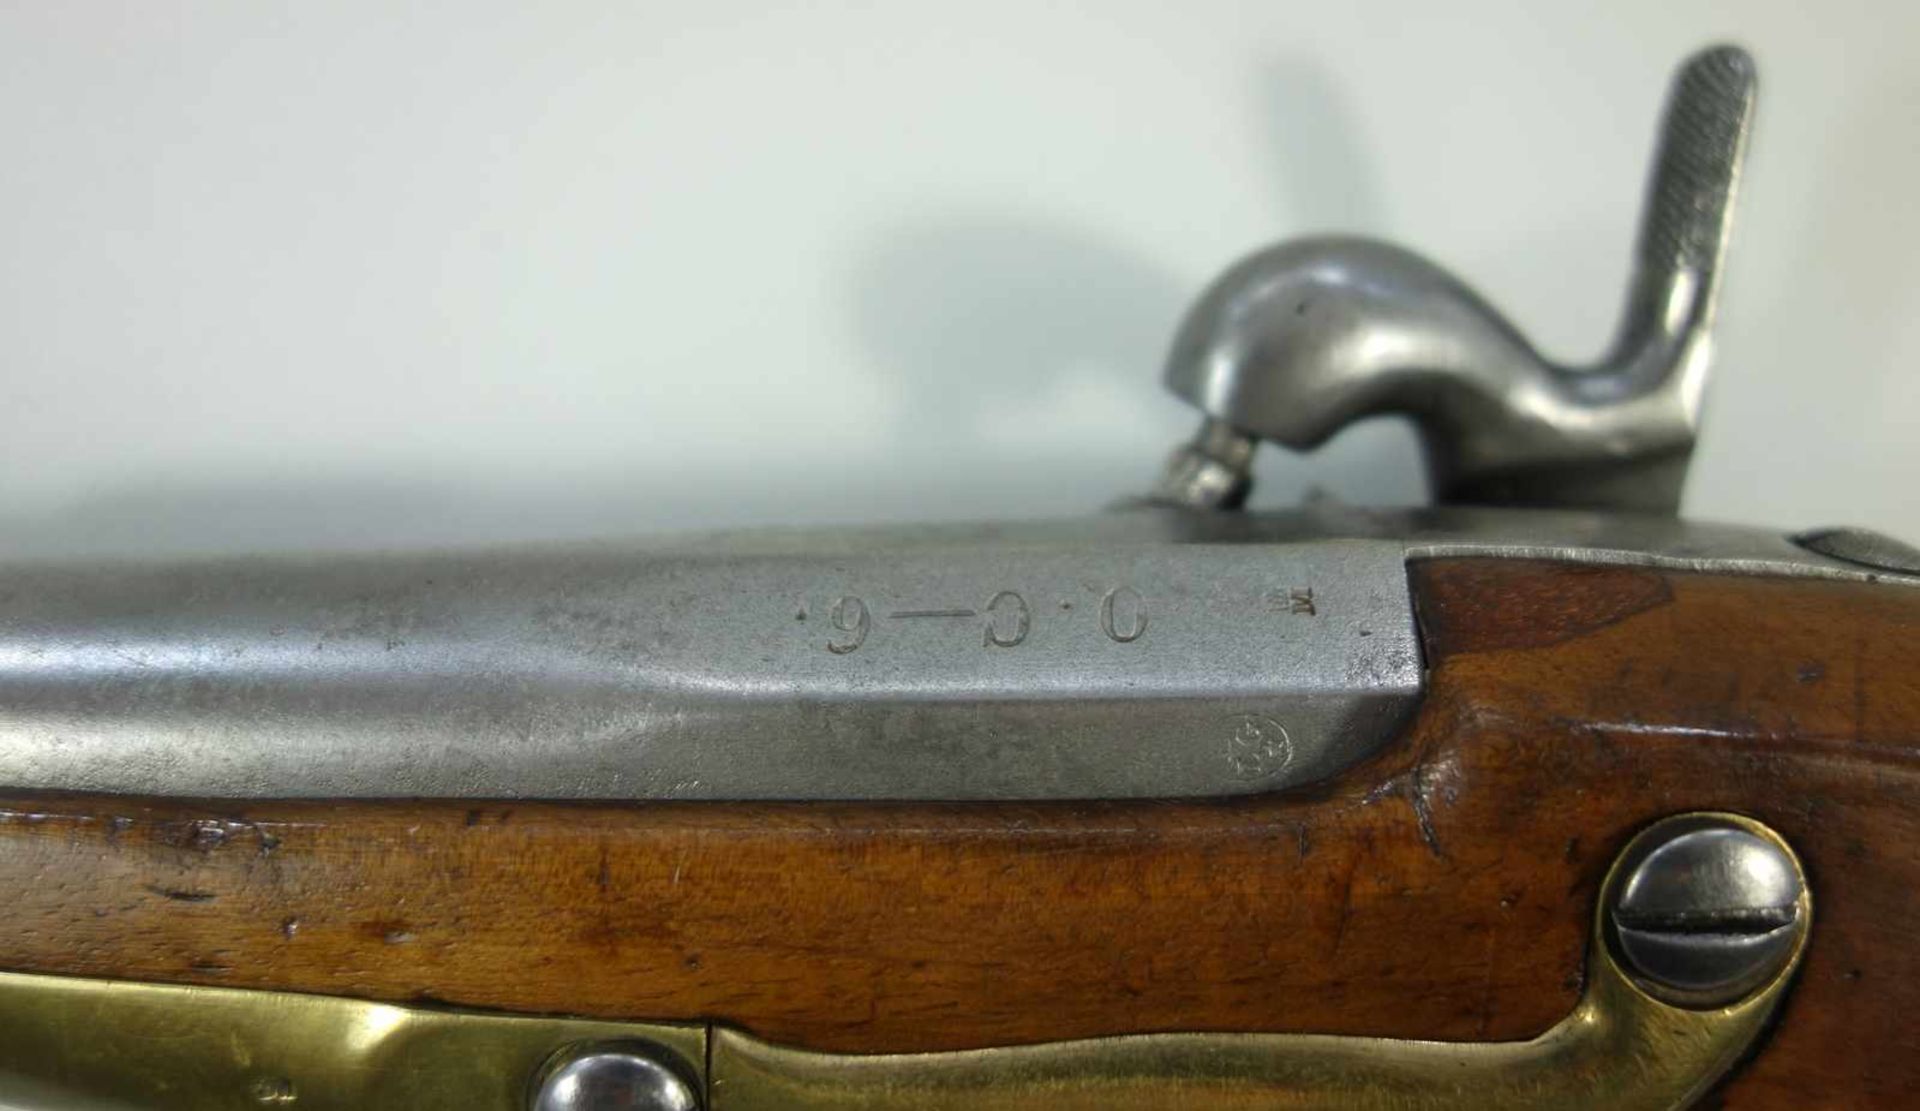 Perkussionspistole, Manufacture Imperiale Liége, Belgien, Kal. 17.6mm, Lauflänge 277mm, gesamt 445m, - Image 4 of 4